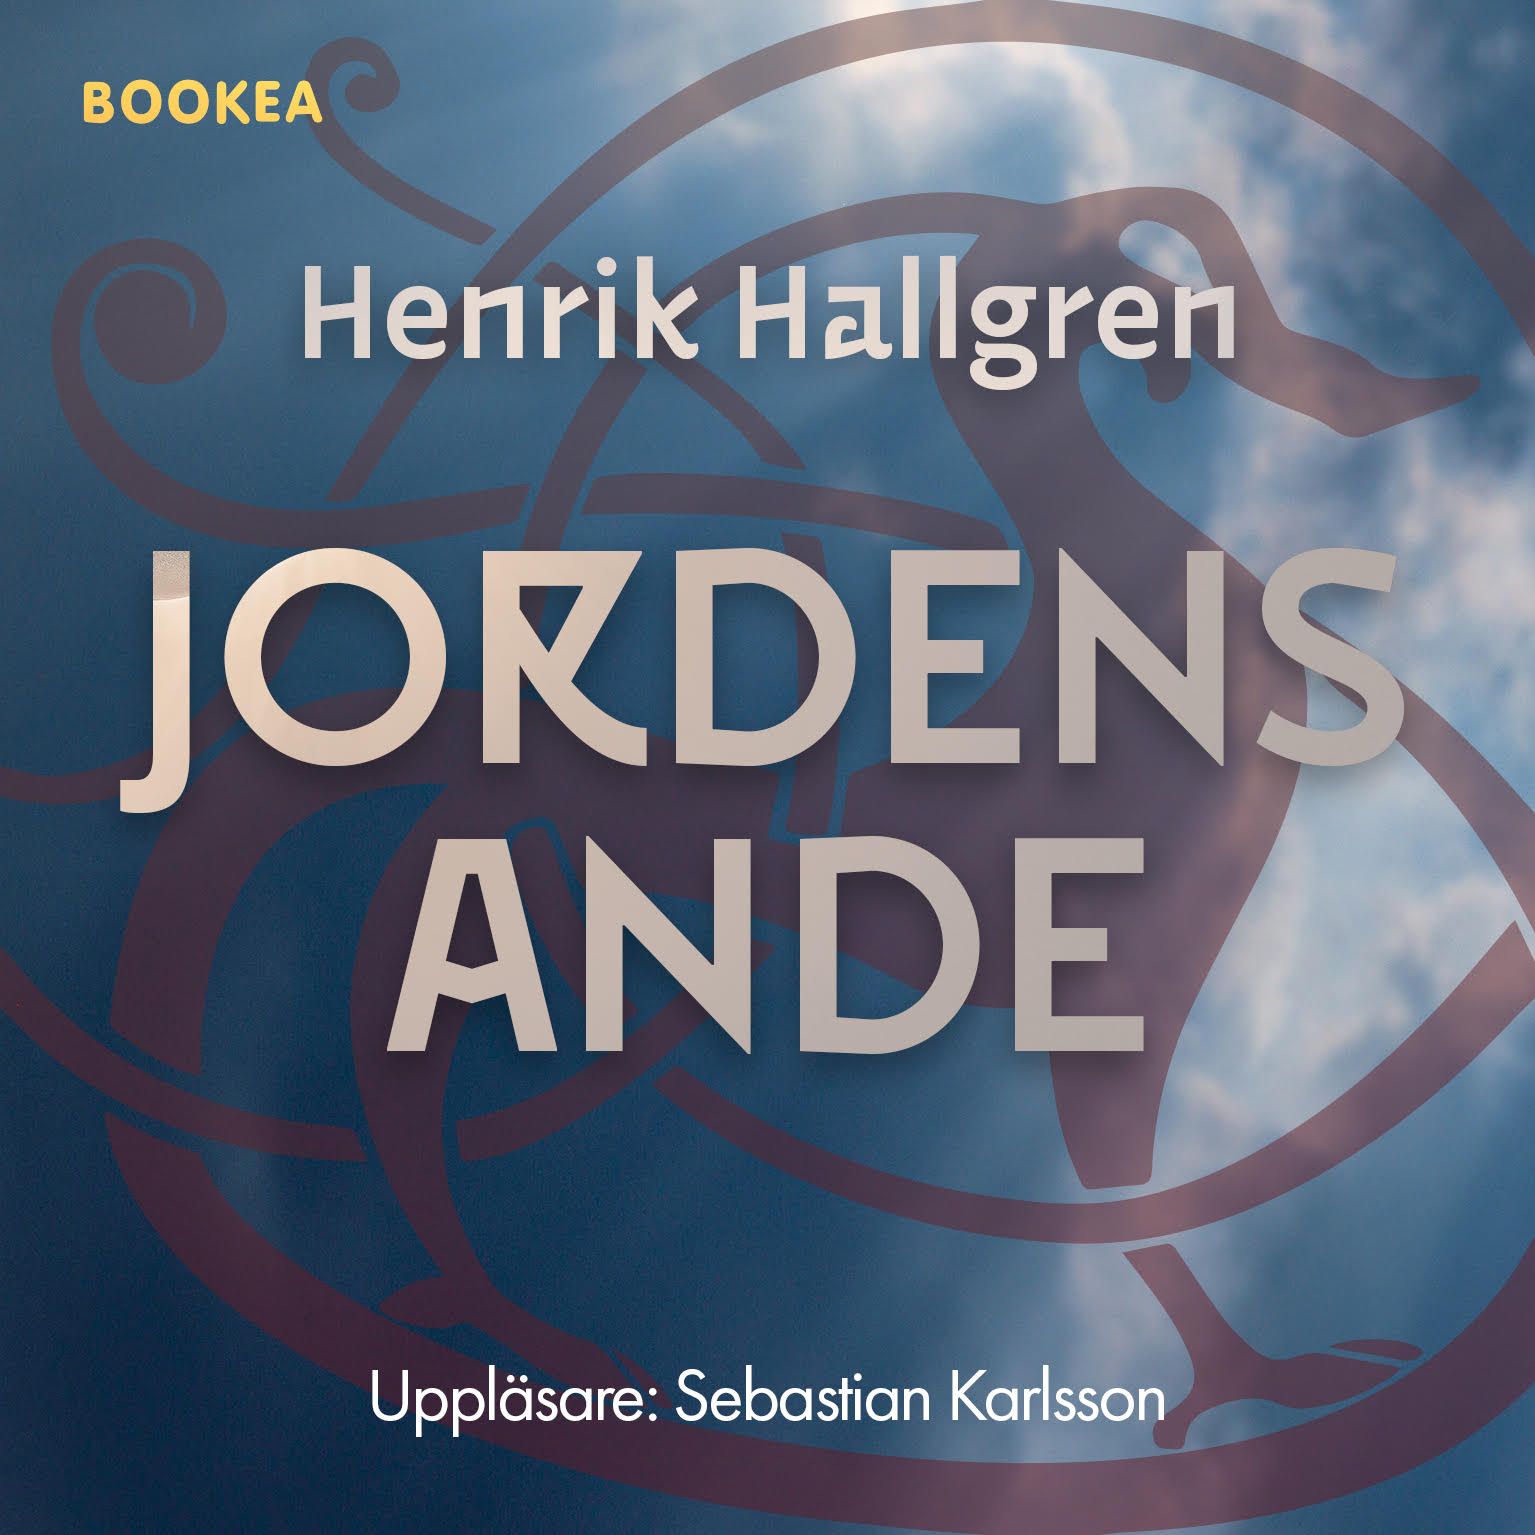 Jordens ande, audiobook by Henrik Hallgren